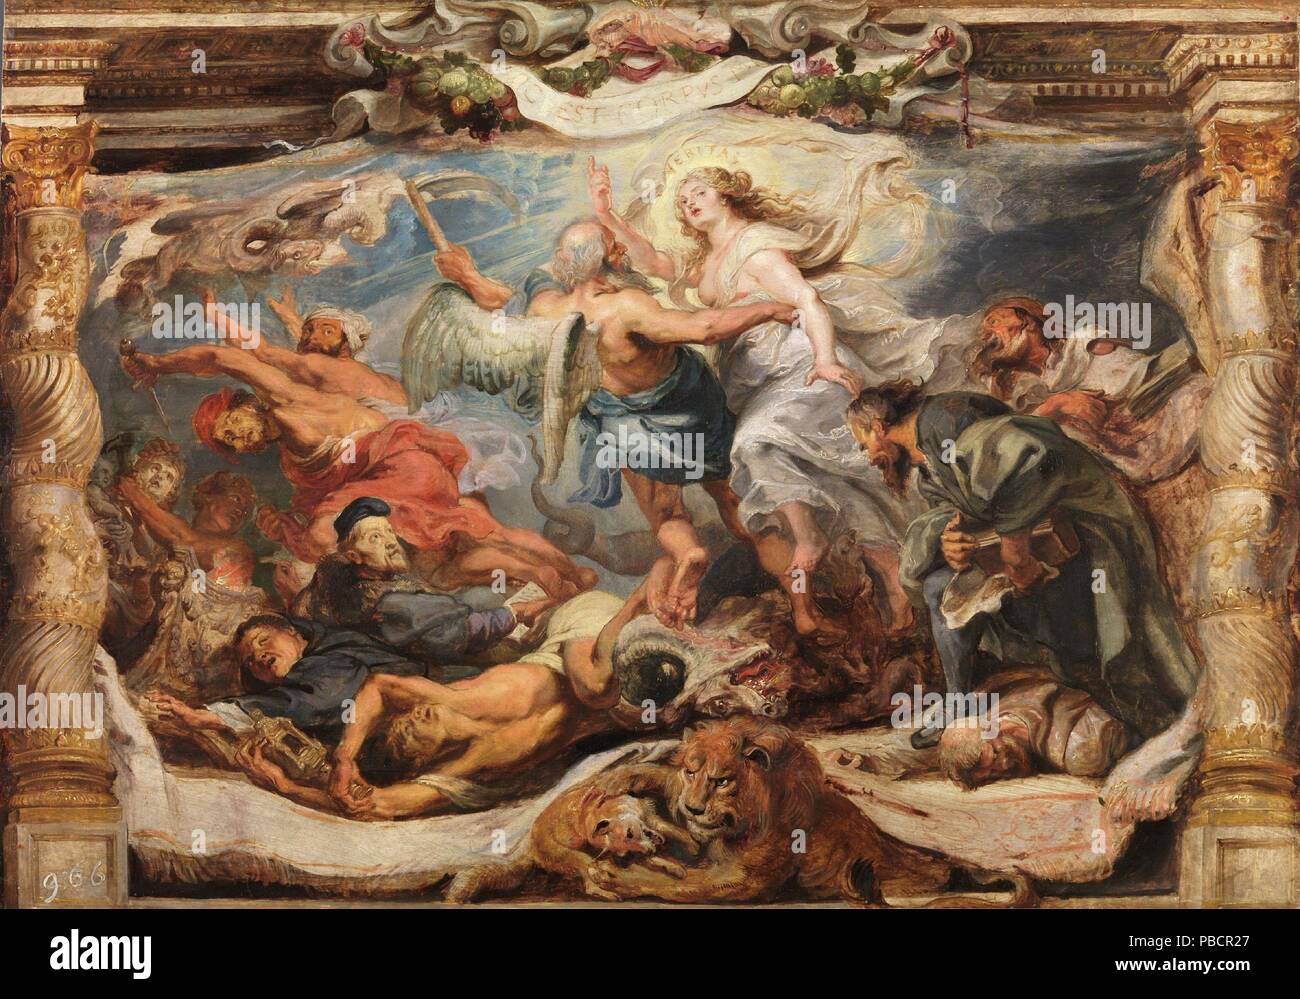 Pieter Paul Rubens / "Der Sieg der Wahrheit über die Häresie". Ca. 1625. Öl auf Leinwand. Artwork auch als: Triunfo de La Verdad Católica bekannt. Museum: Museo del Prado, Madrid, España. Stockfoto